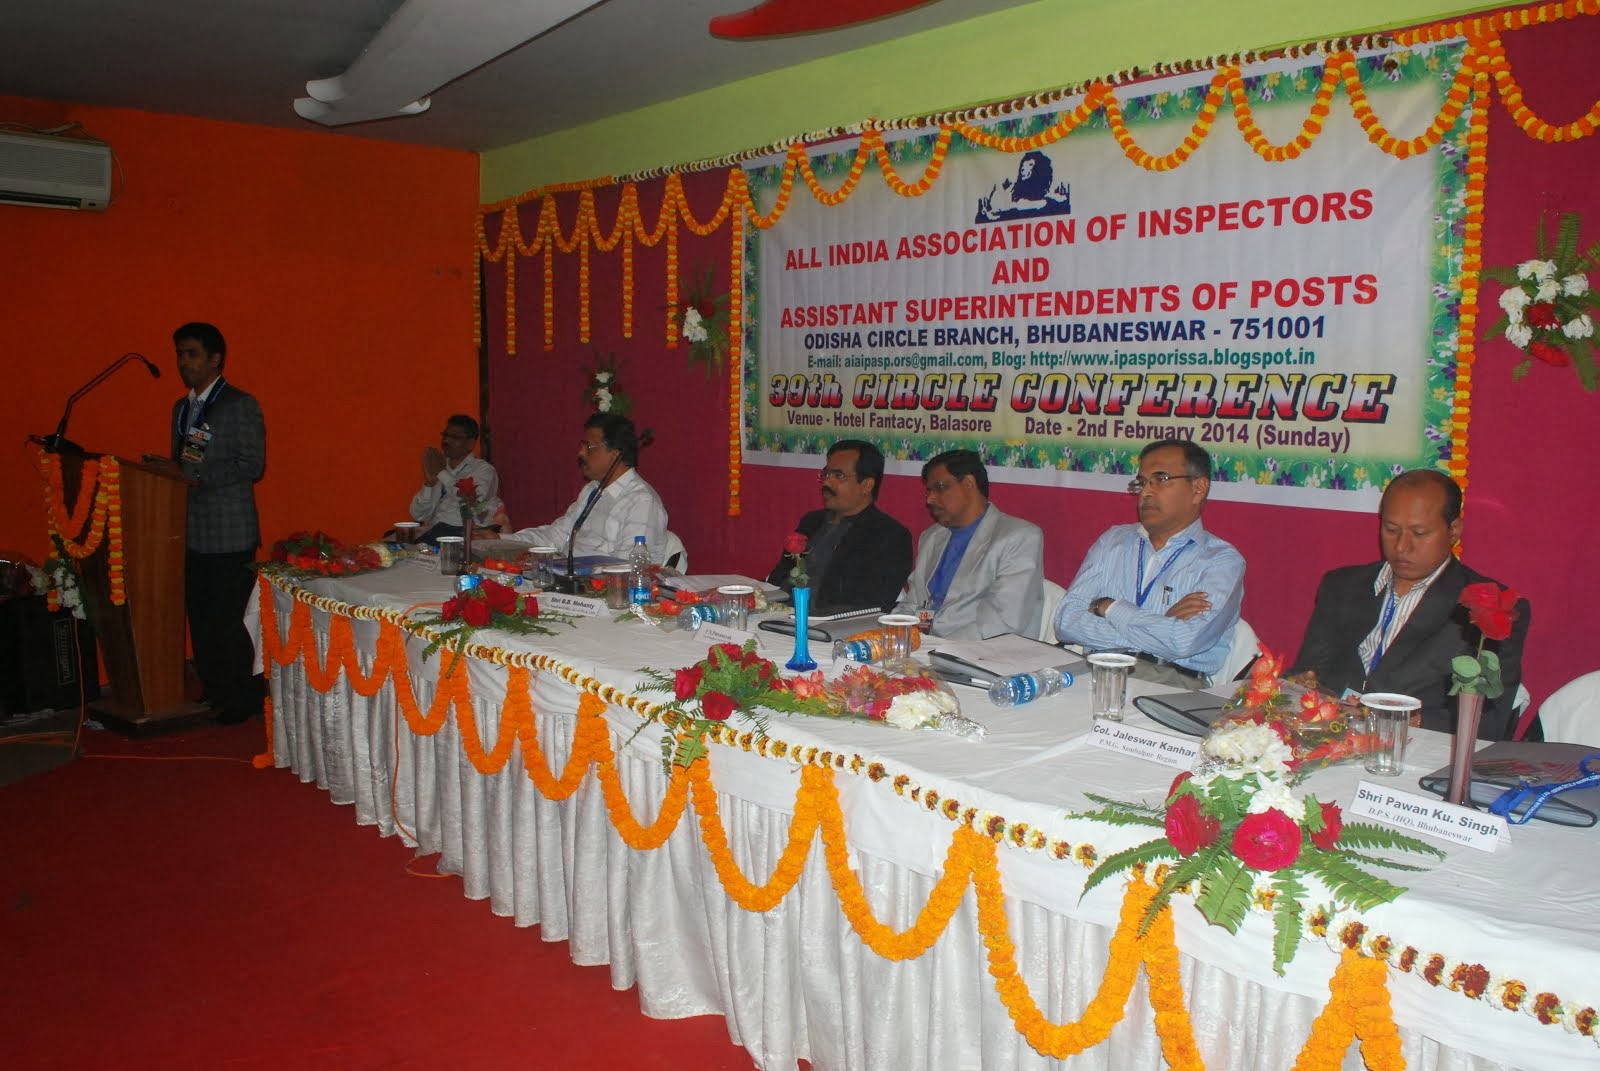 39th Circle Conference held on 02-02-2014 at Balasore